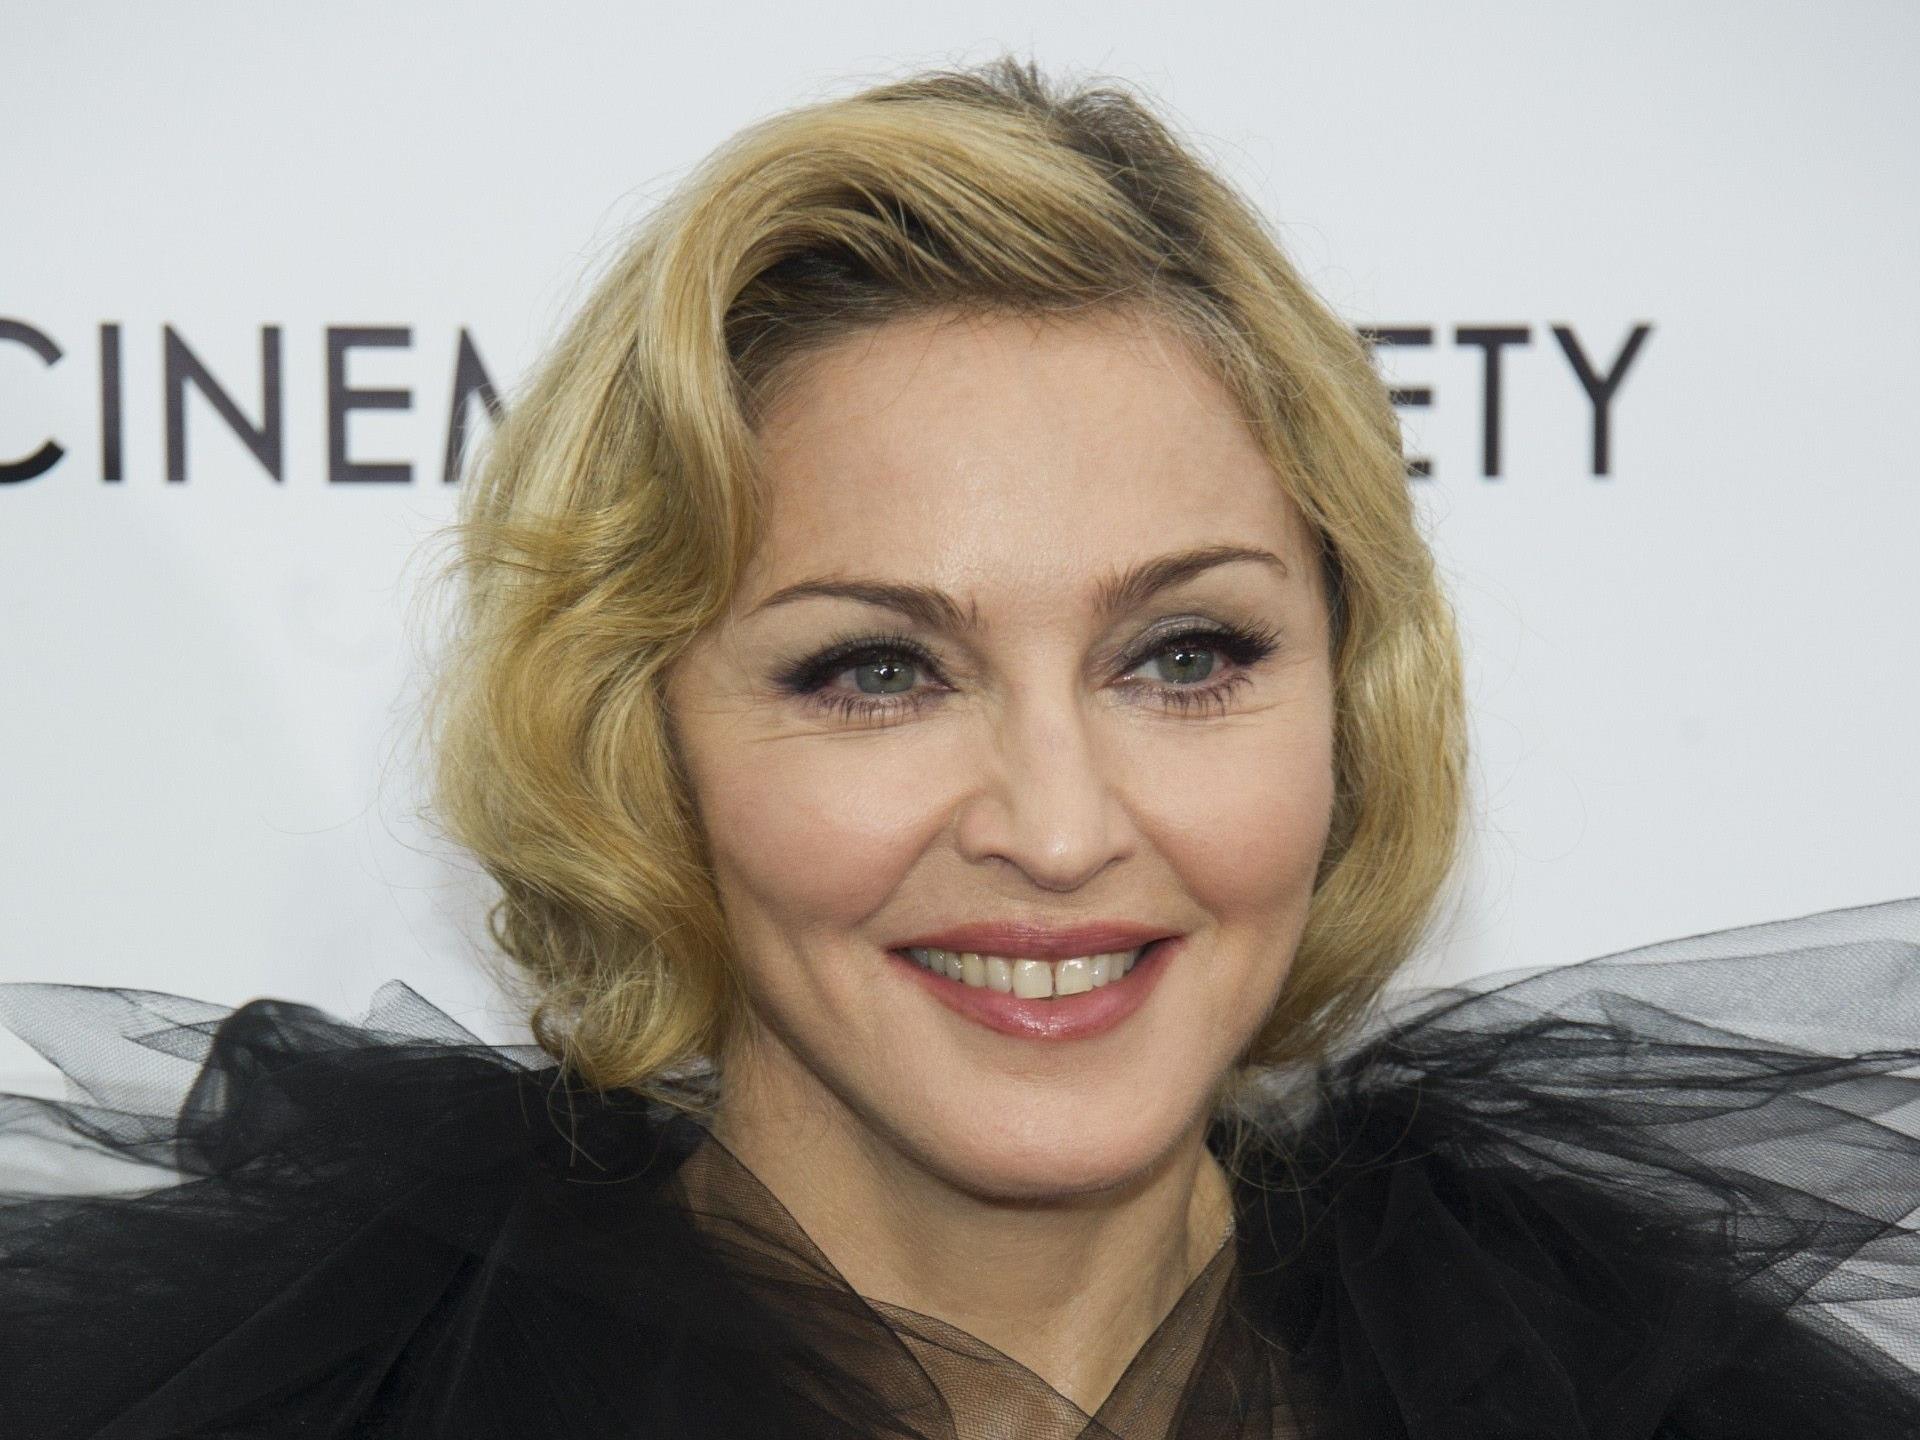 Madonna durfte sich viele Jahre vor dem Stalker sicher fühlen. Nun beginnt das Bangen erneut.